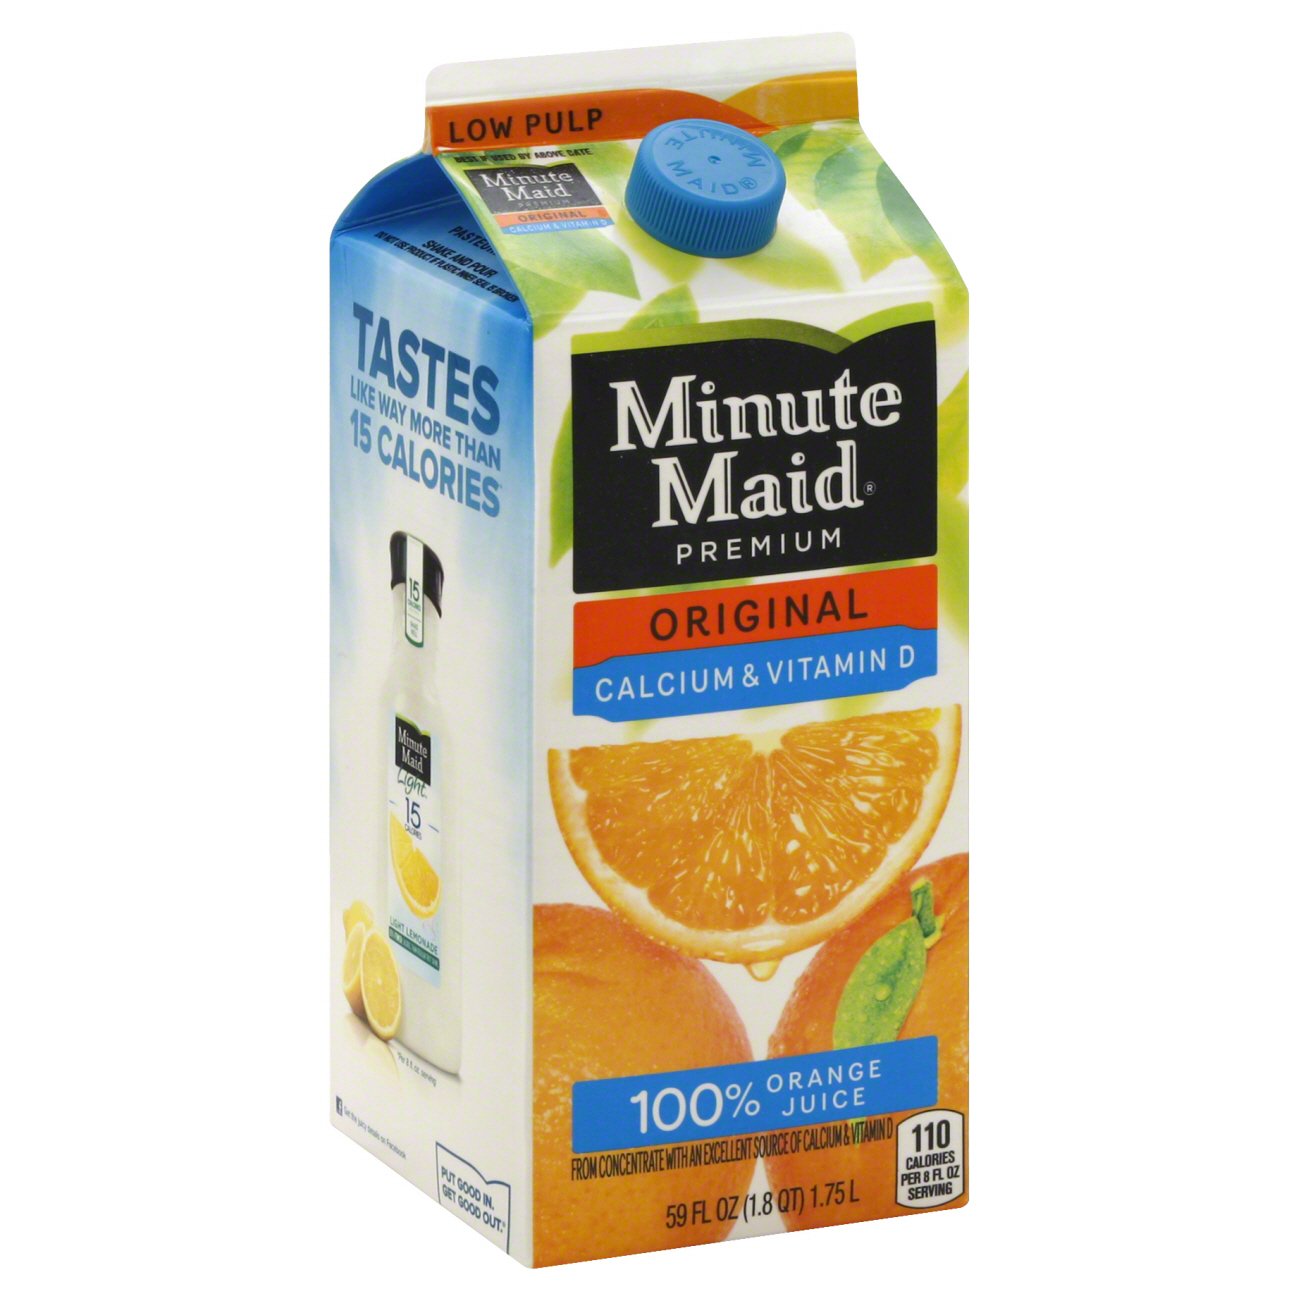 Minute Maid Premium Original Calcium Vitamin D Low Pulp 100